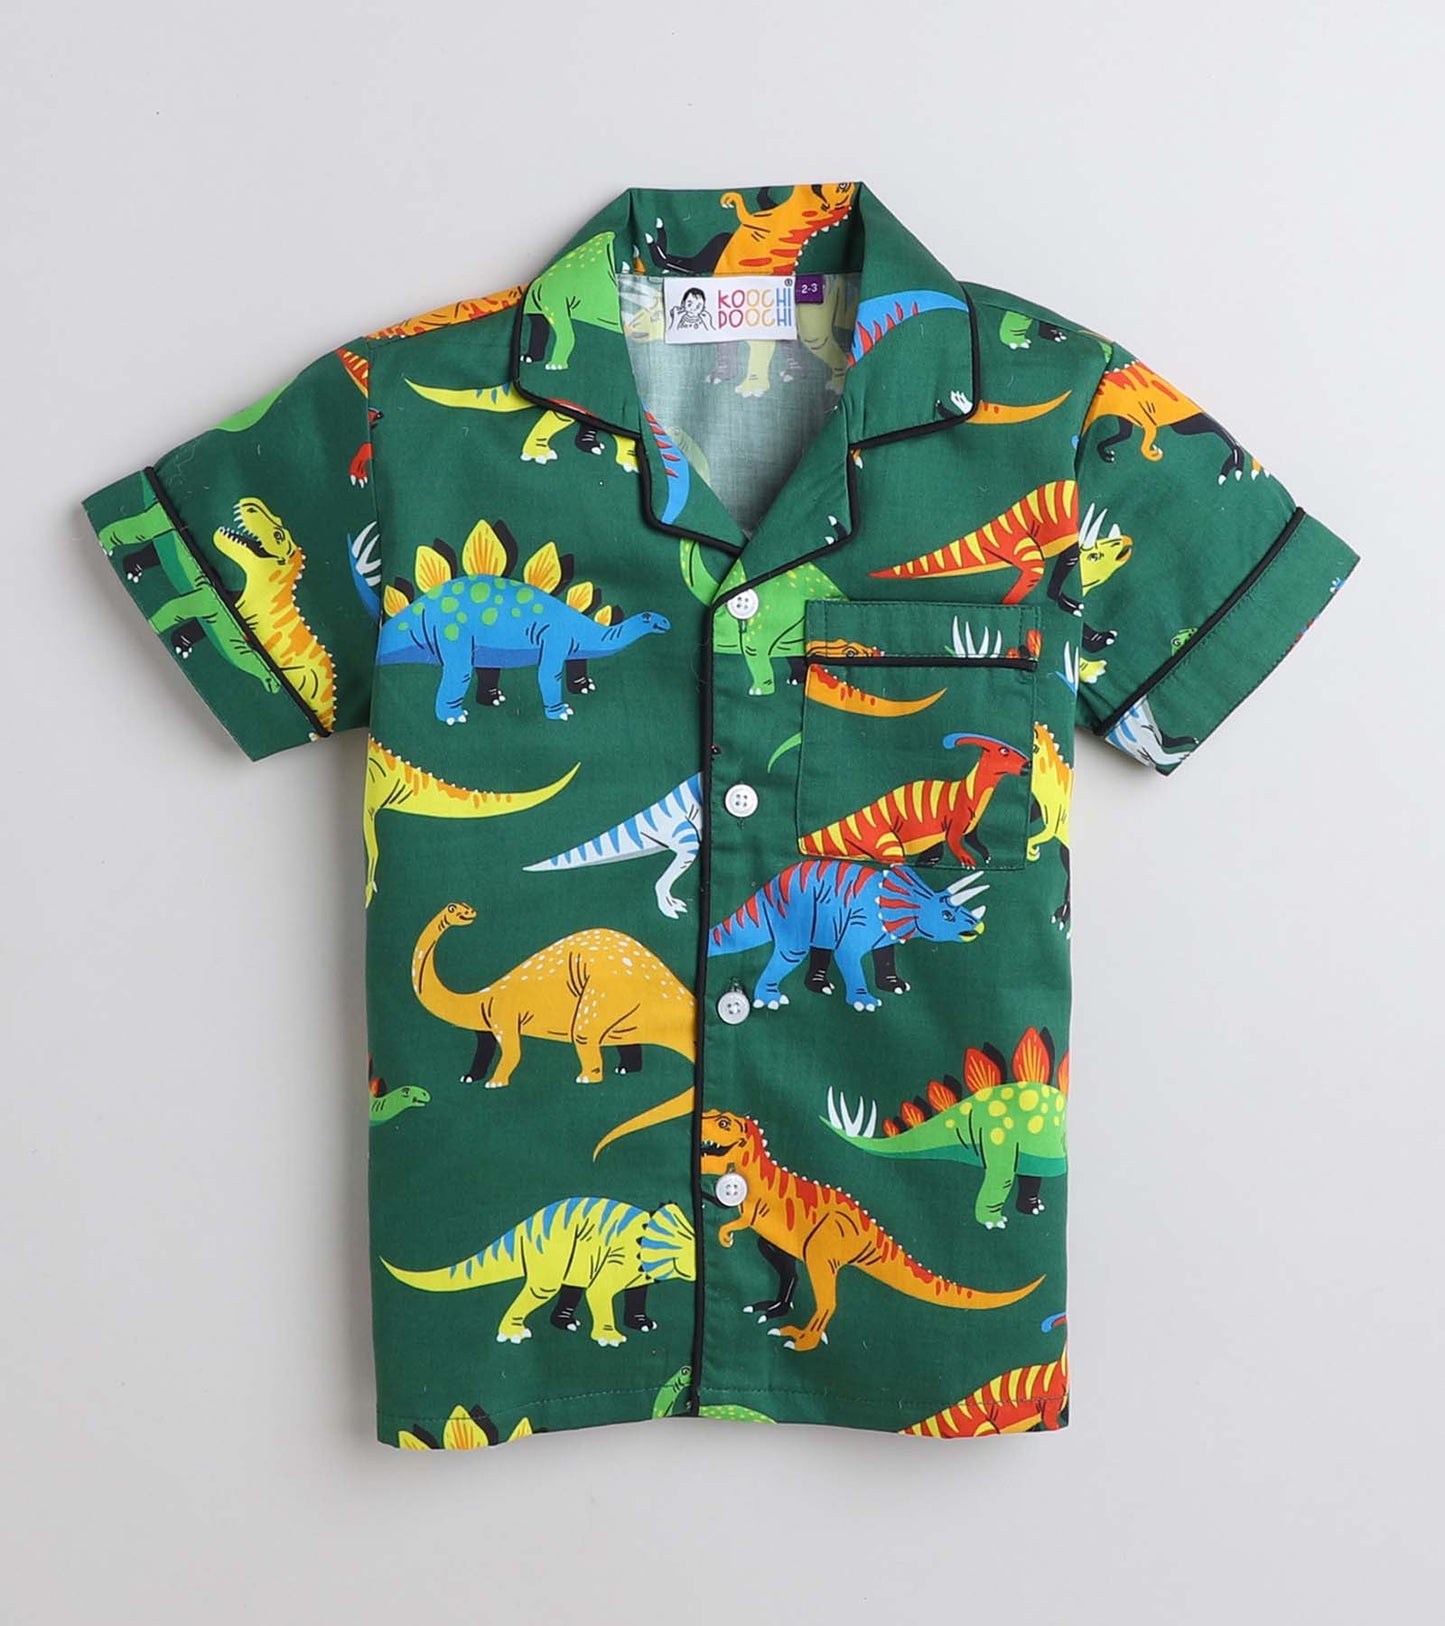 Big Dinosaur Night Suit Set Half Sleeve